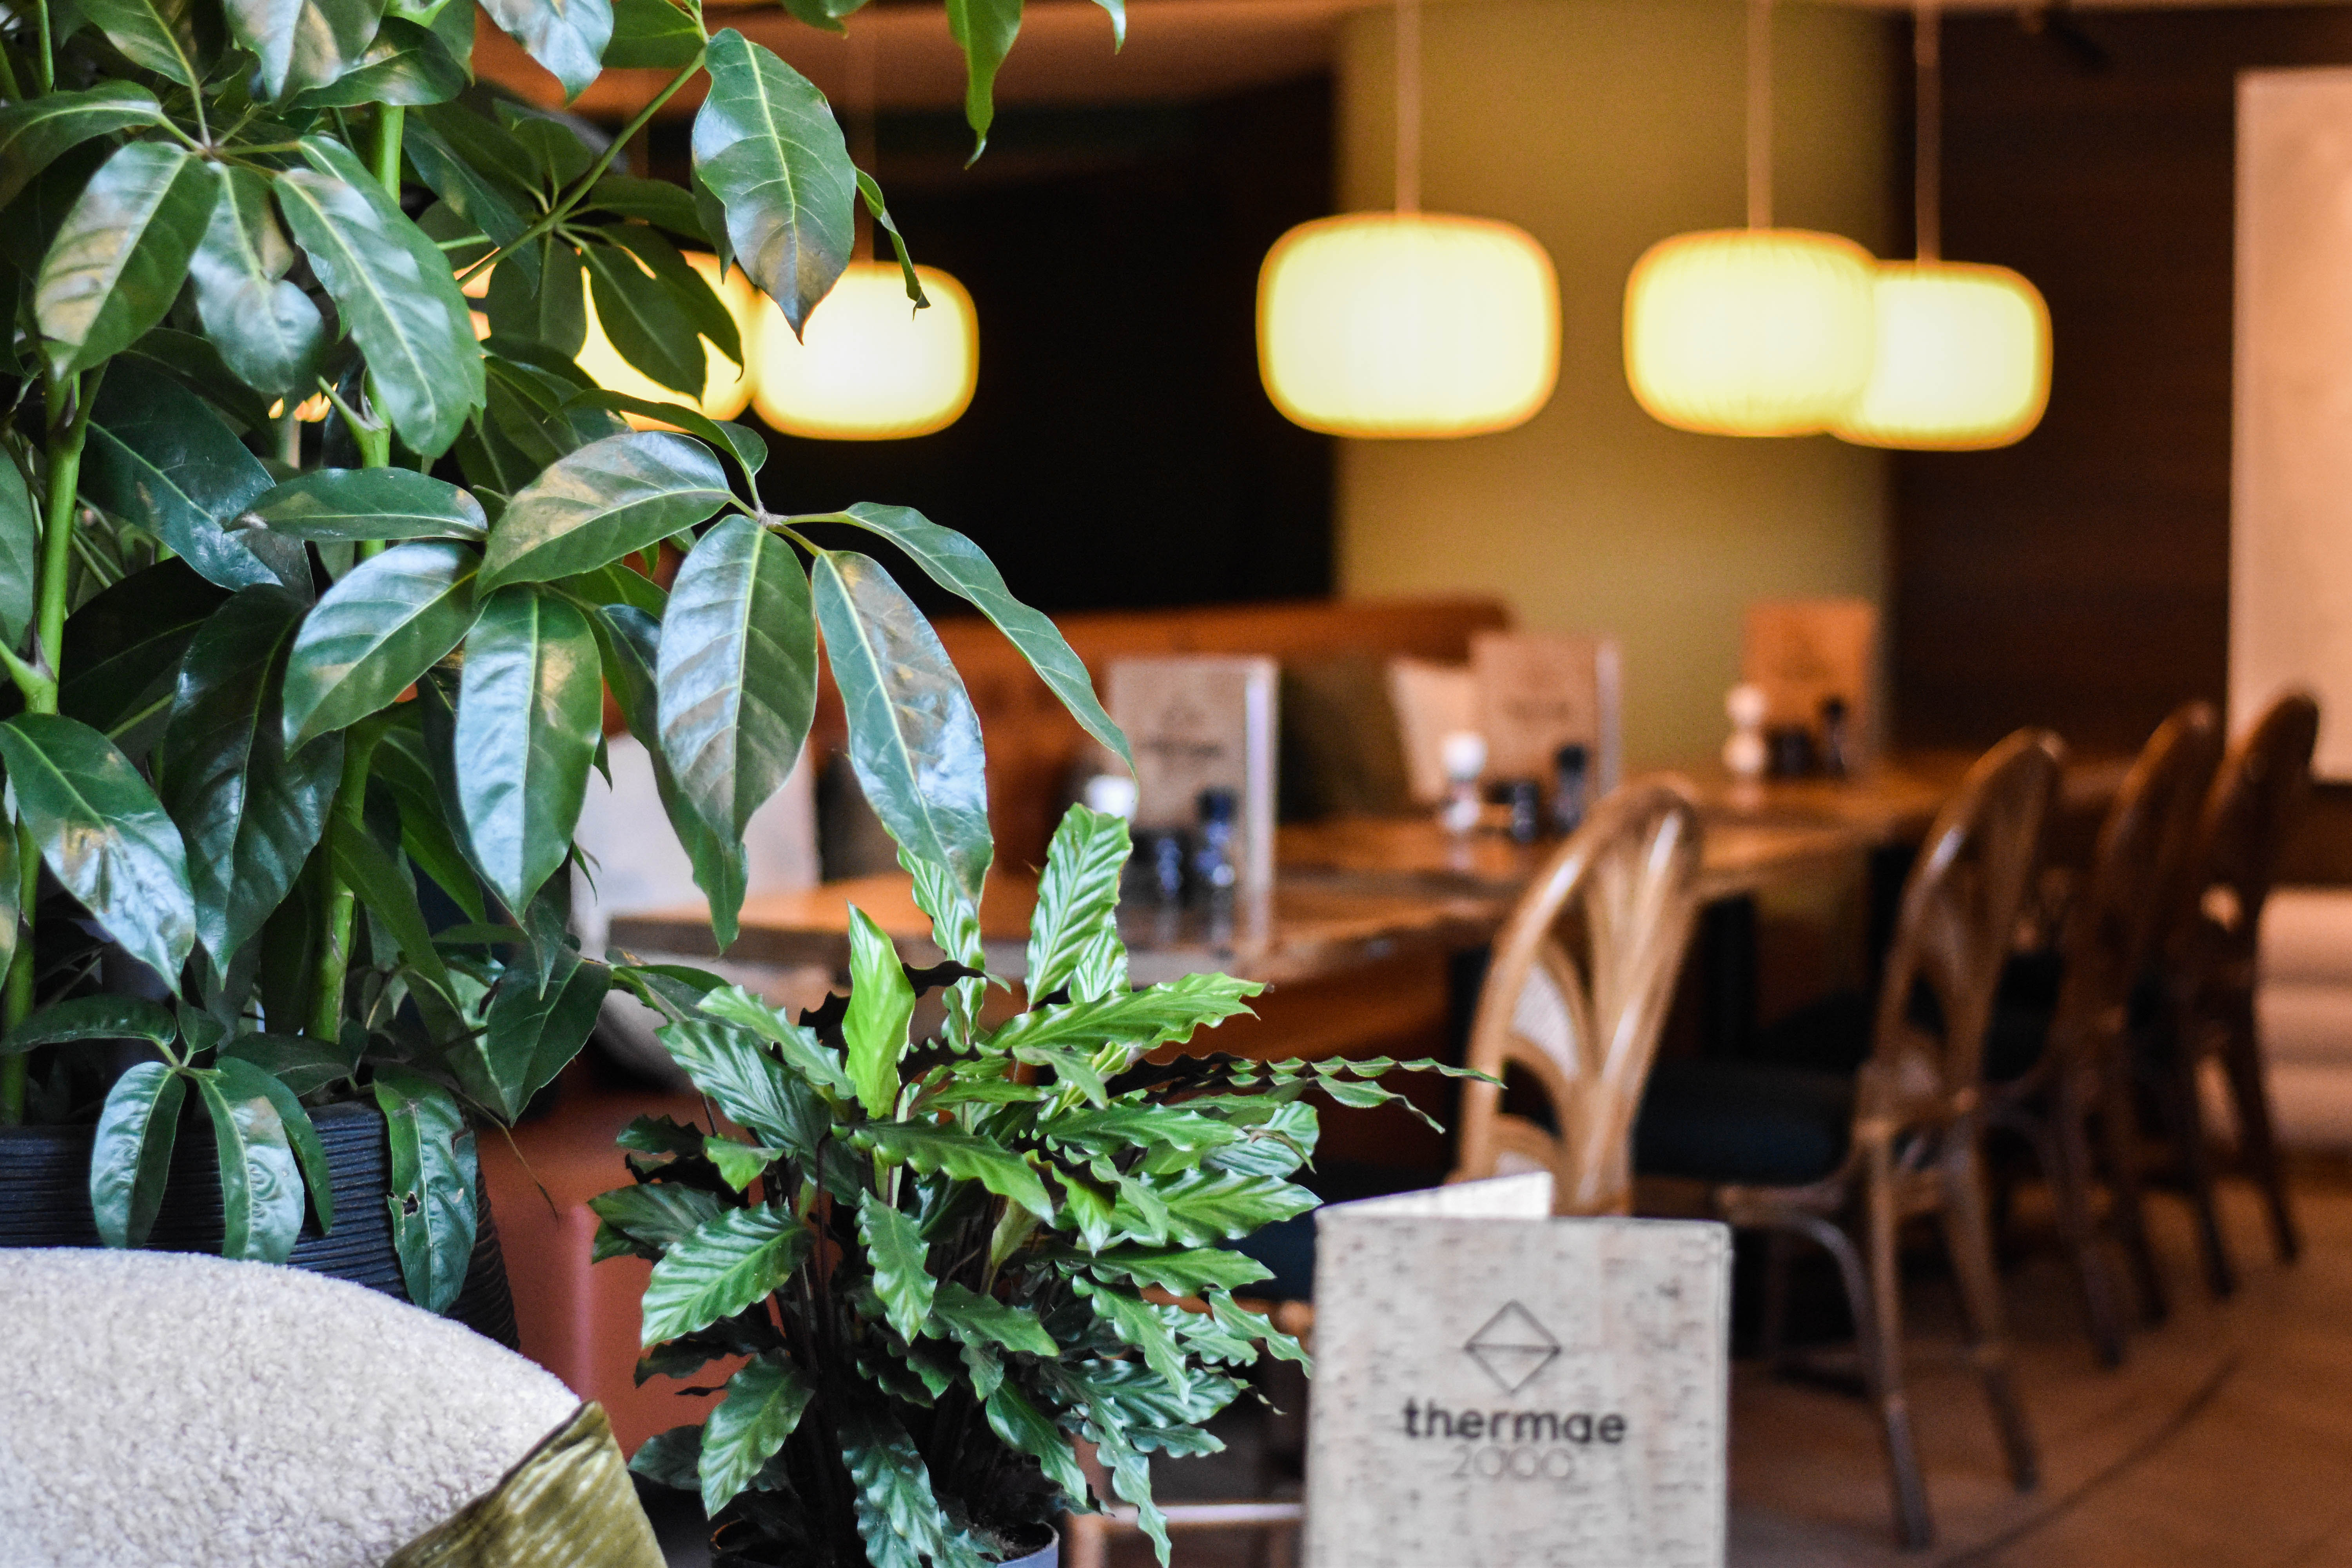 Senses restaurant eetgedeelte met planten en menukaarten op tafel.